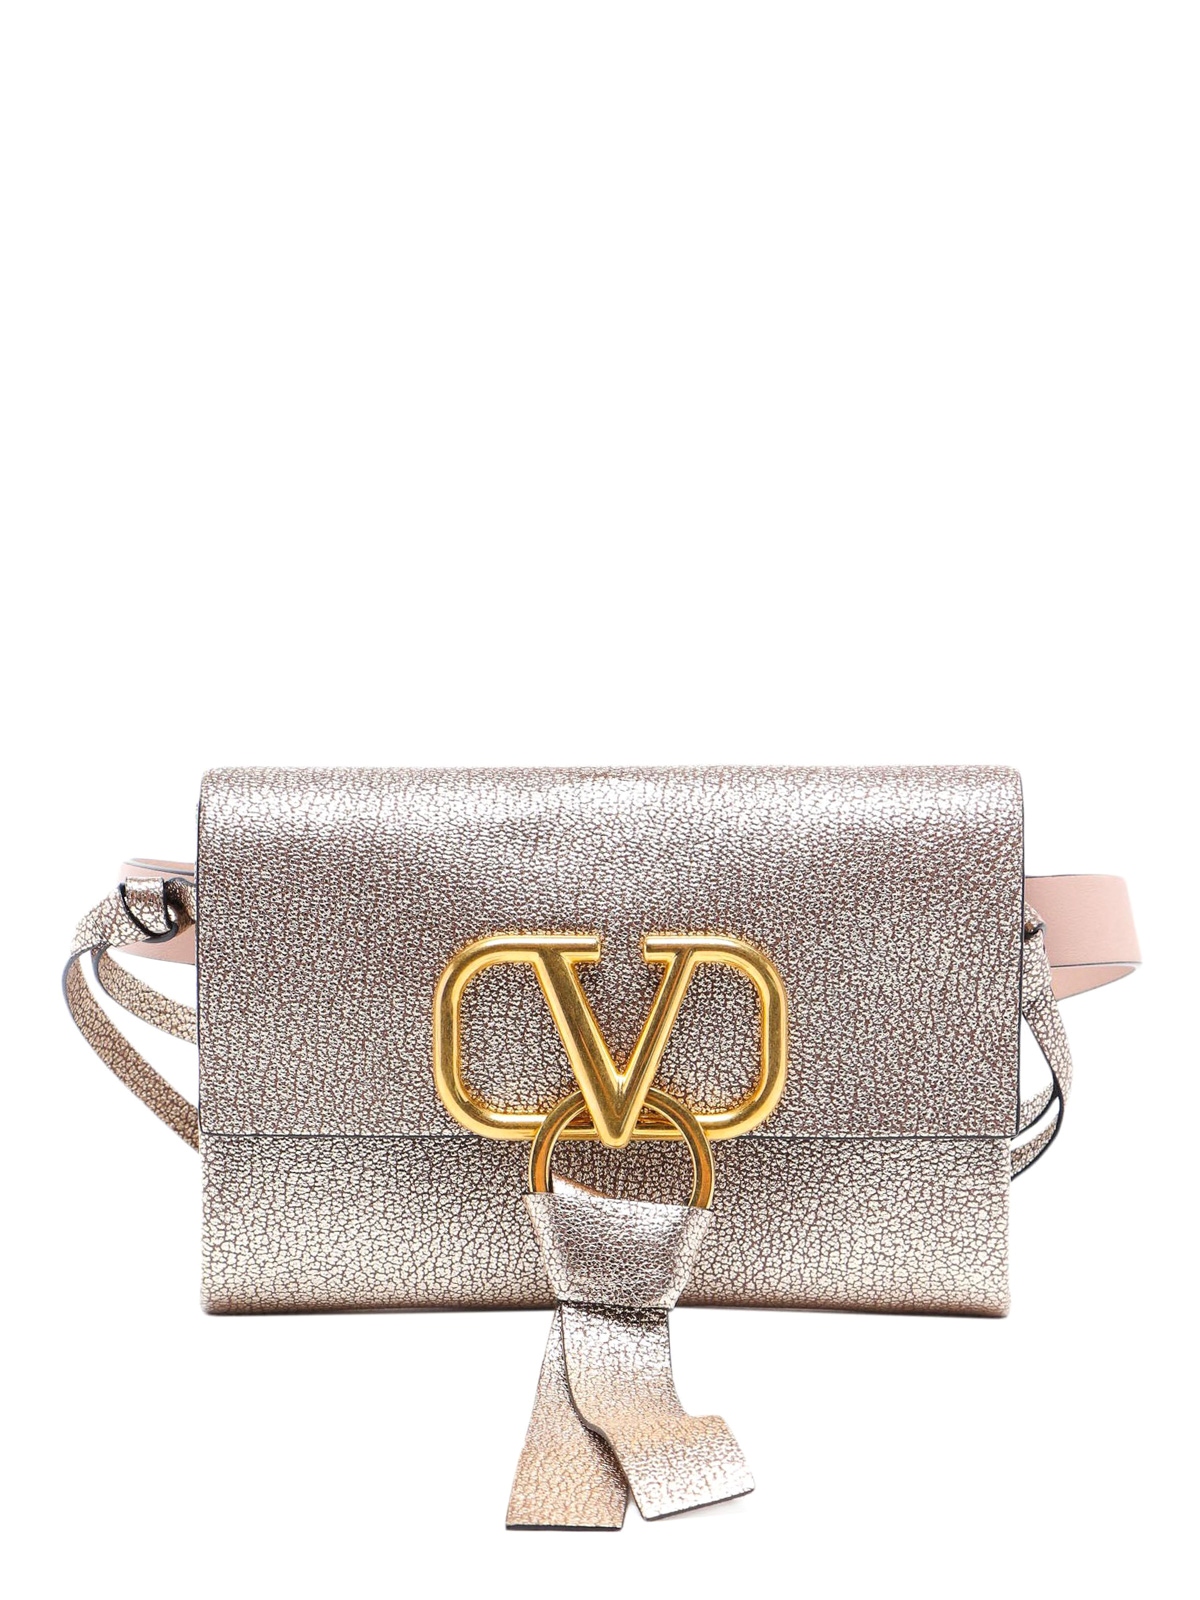 Valentino vring belt bag